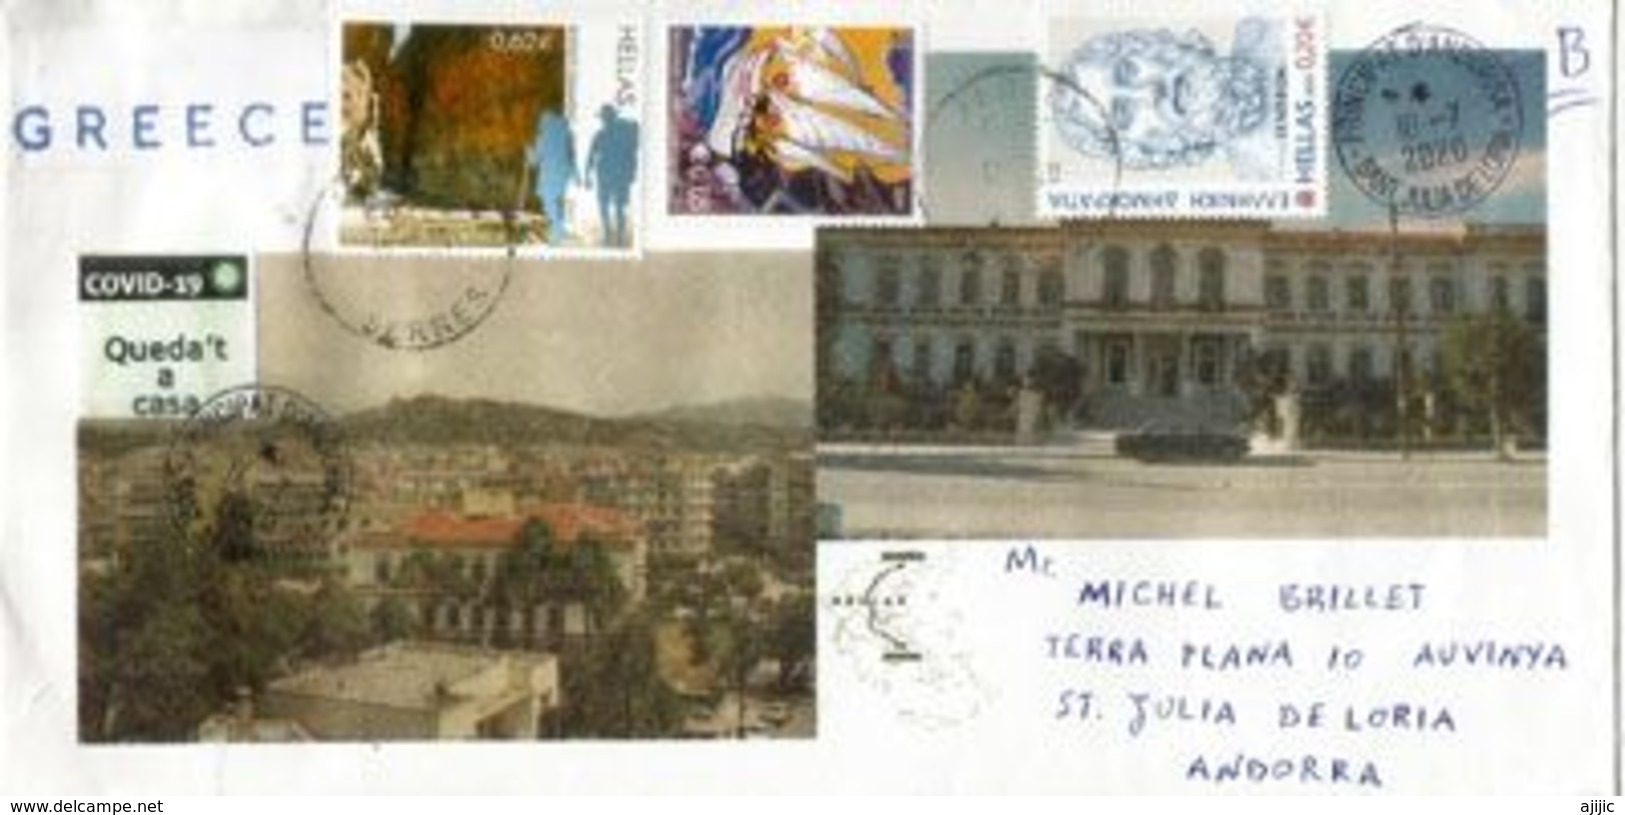 Lettre De Grèce Envoyée Andorra Pendant Le COVID19 Lockdown, Avec Vignette Prévention STAY HOME / QUEDA'T A CASA - Covers & Documents